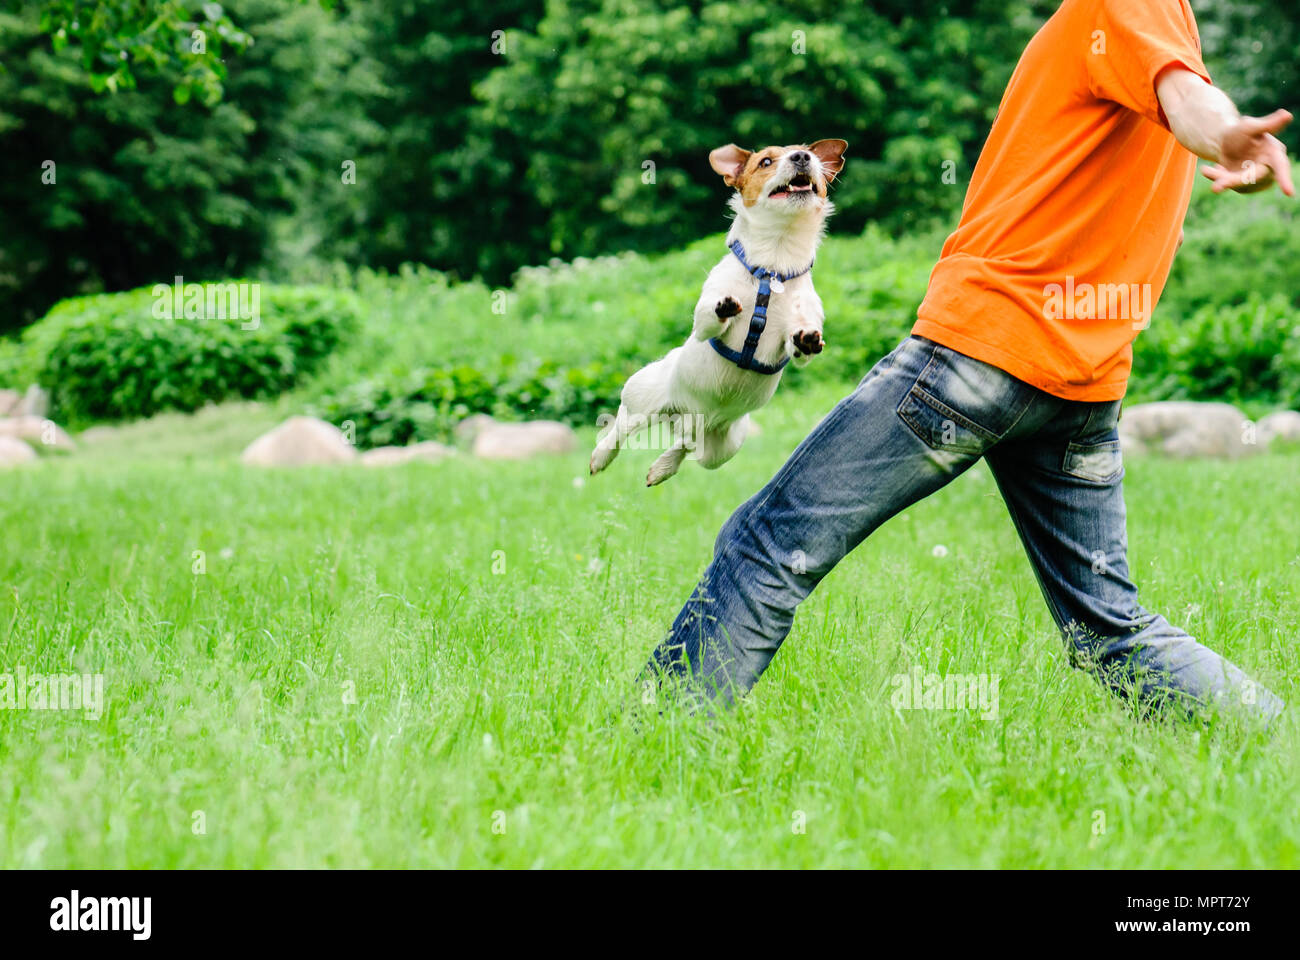 Hund springen und fliegen über Bein der Mann, der Freestyle Tricks  Stockfotografie - Alamy